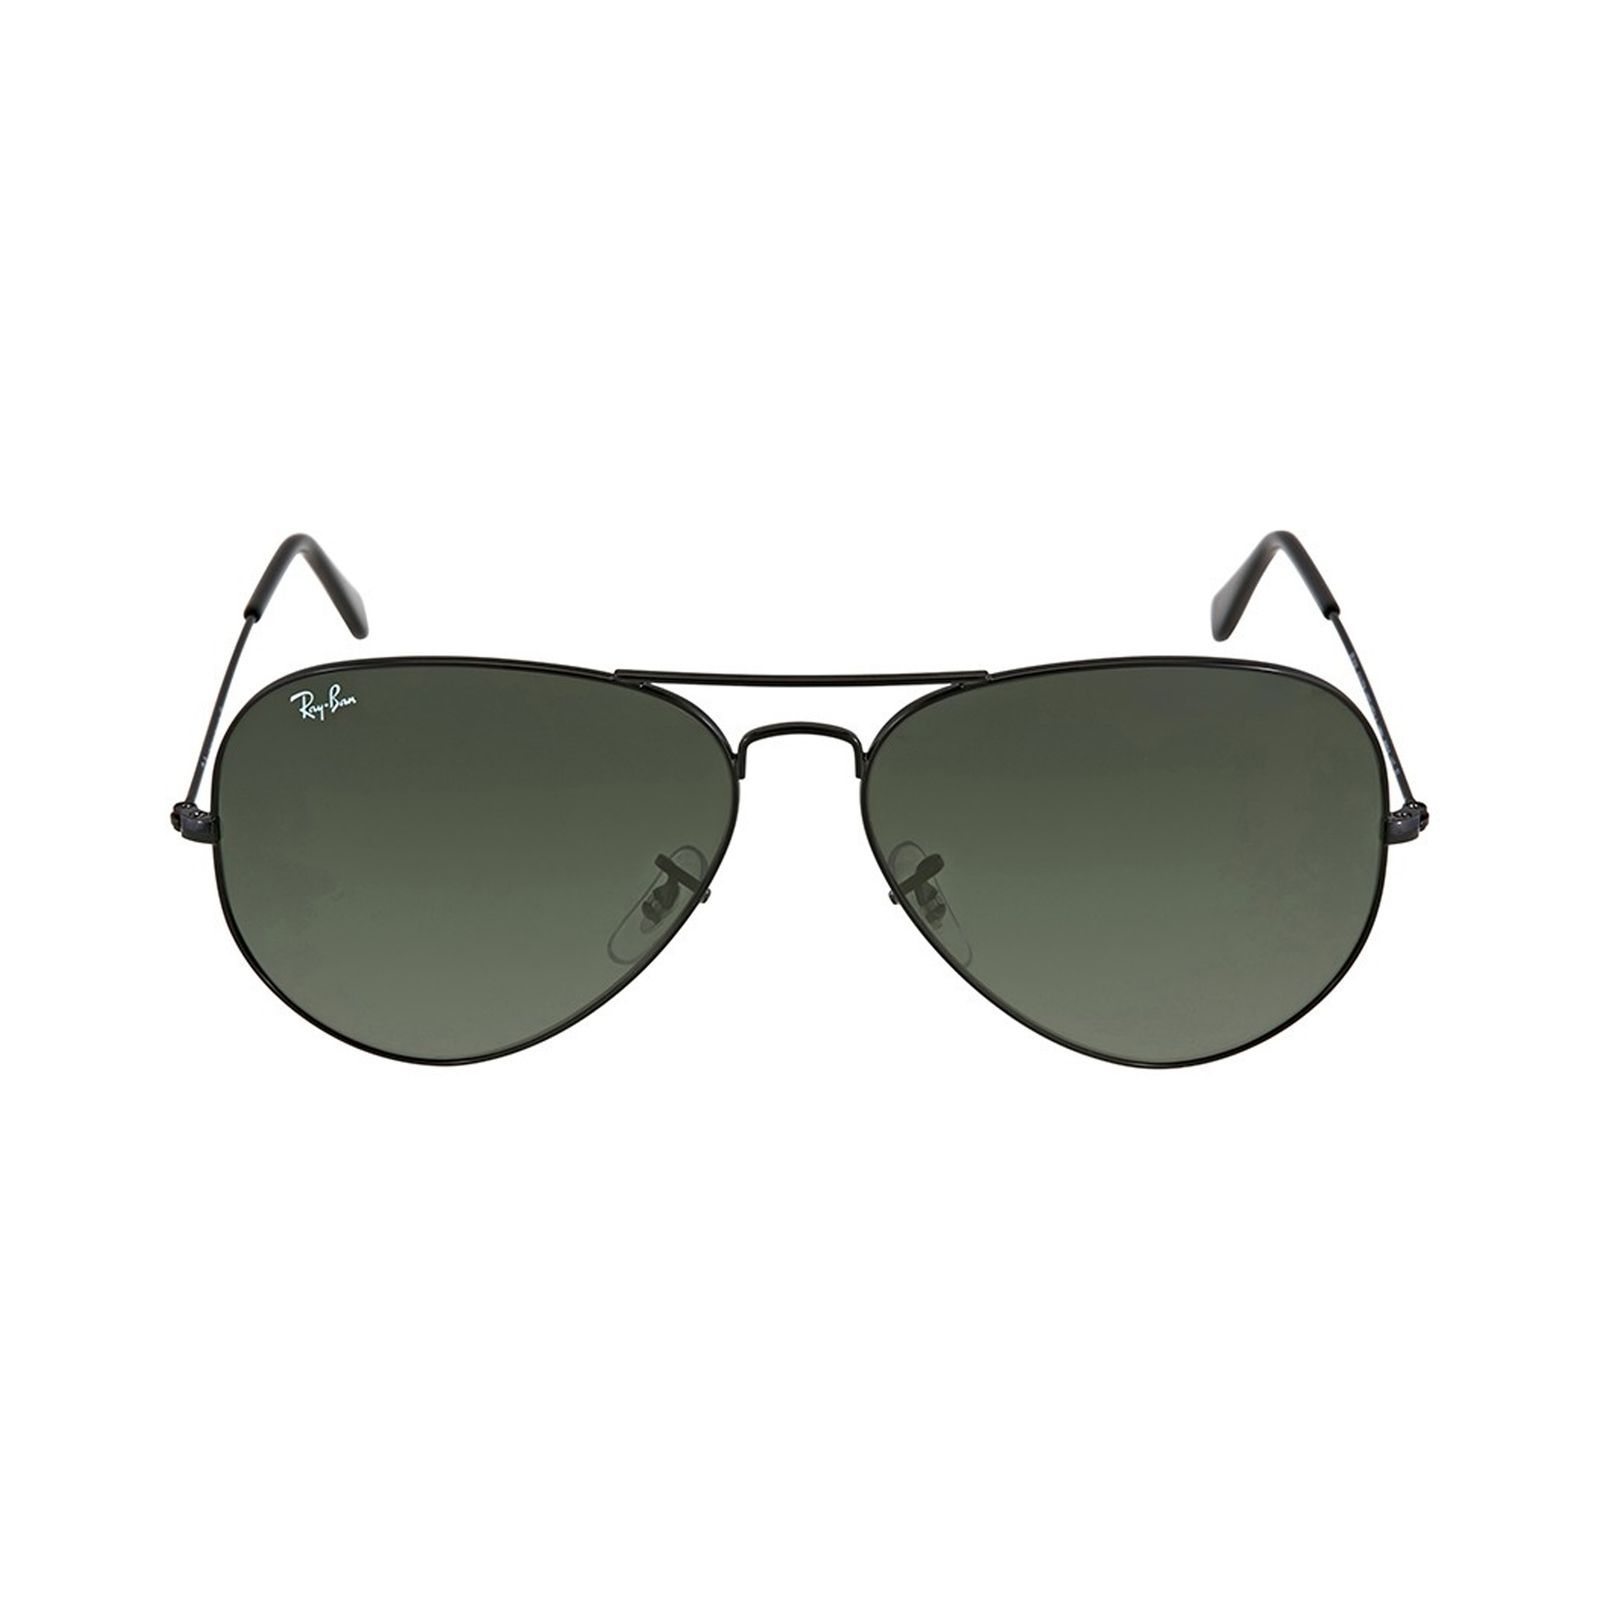 عینک آفتابی ری بن مدل 3026-l2821-62 - مشکی - 1